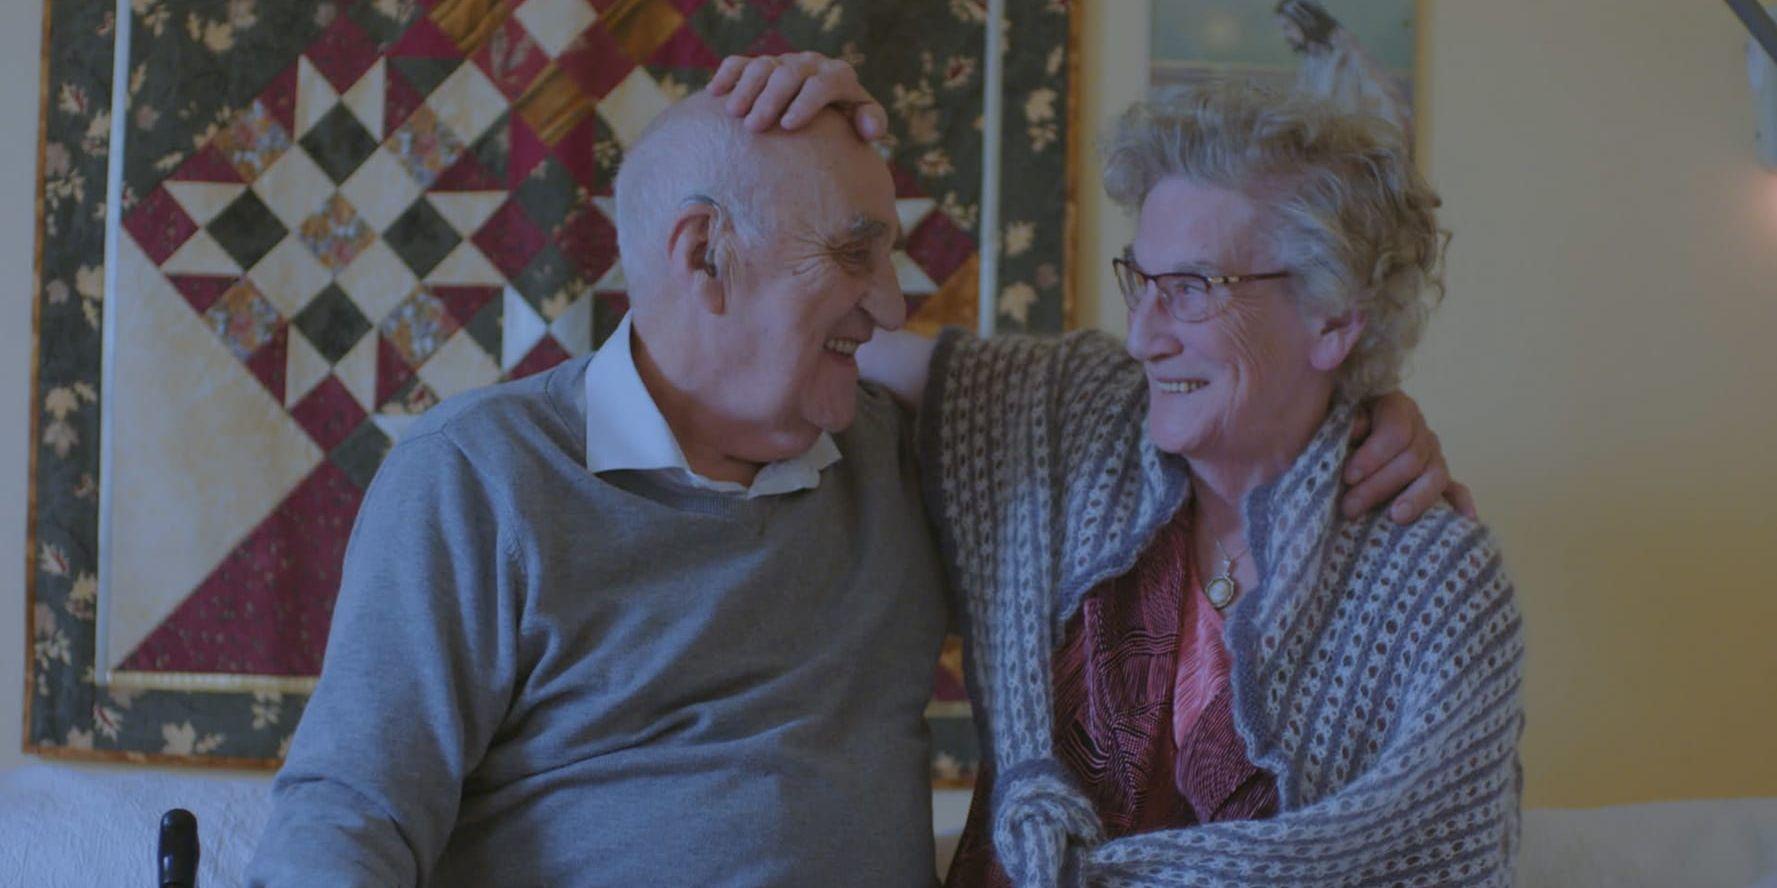 Läkande skratt. Paret Gjerstad har varit gifta i drygt 60 år. Joralf är känd för sin förmåga att bota sjuka med handpåläggning, men sin fru Signes demens kan han inte bota.